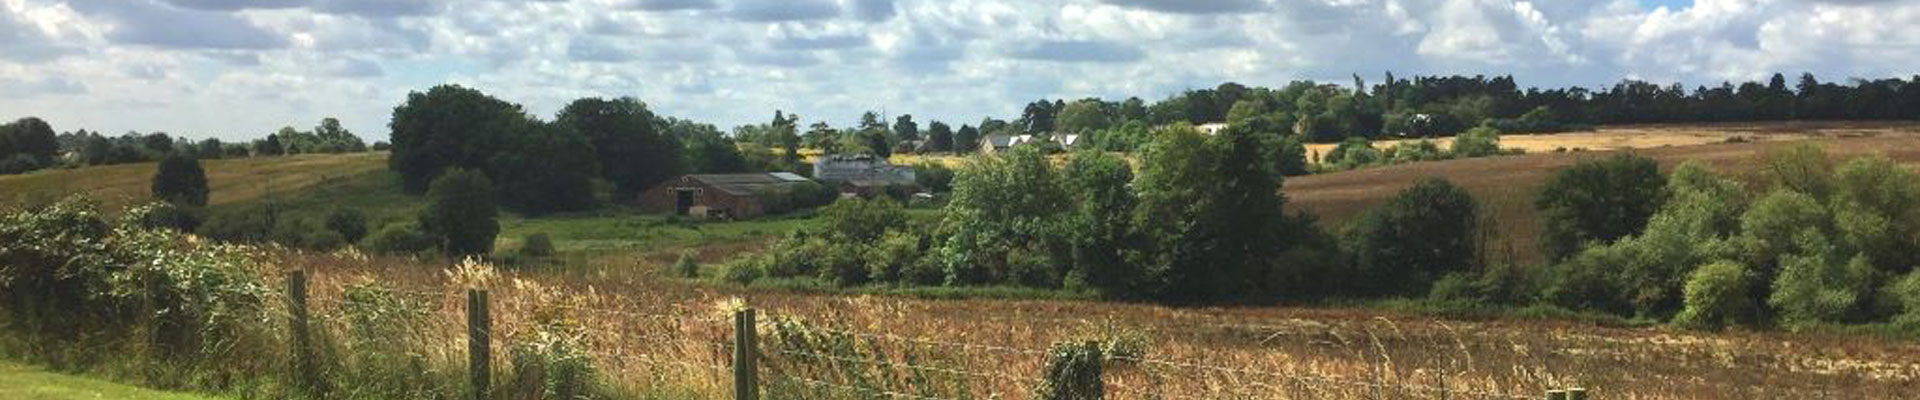 Bishop's Stortford Farnham Bourne Valley